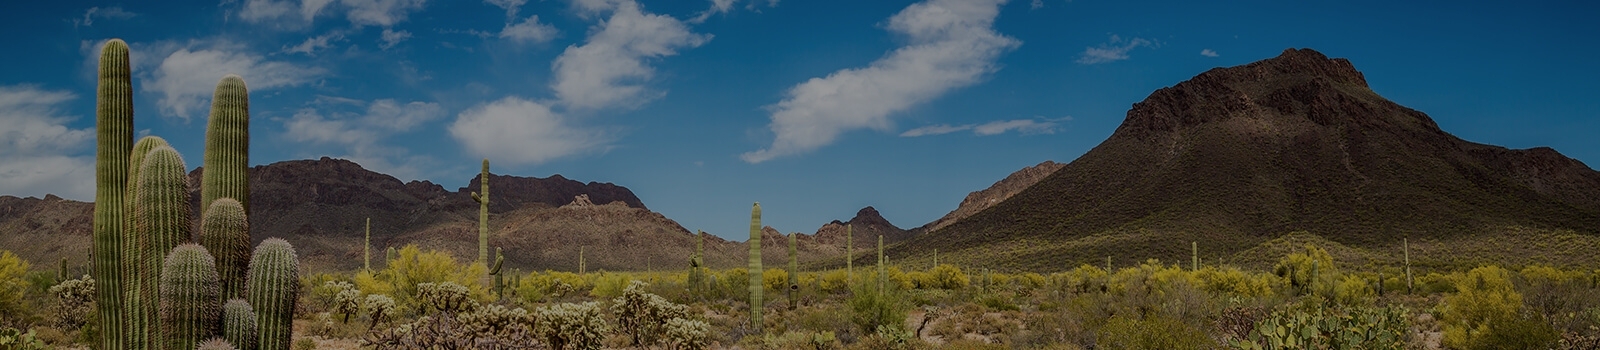 Arizona Scenery